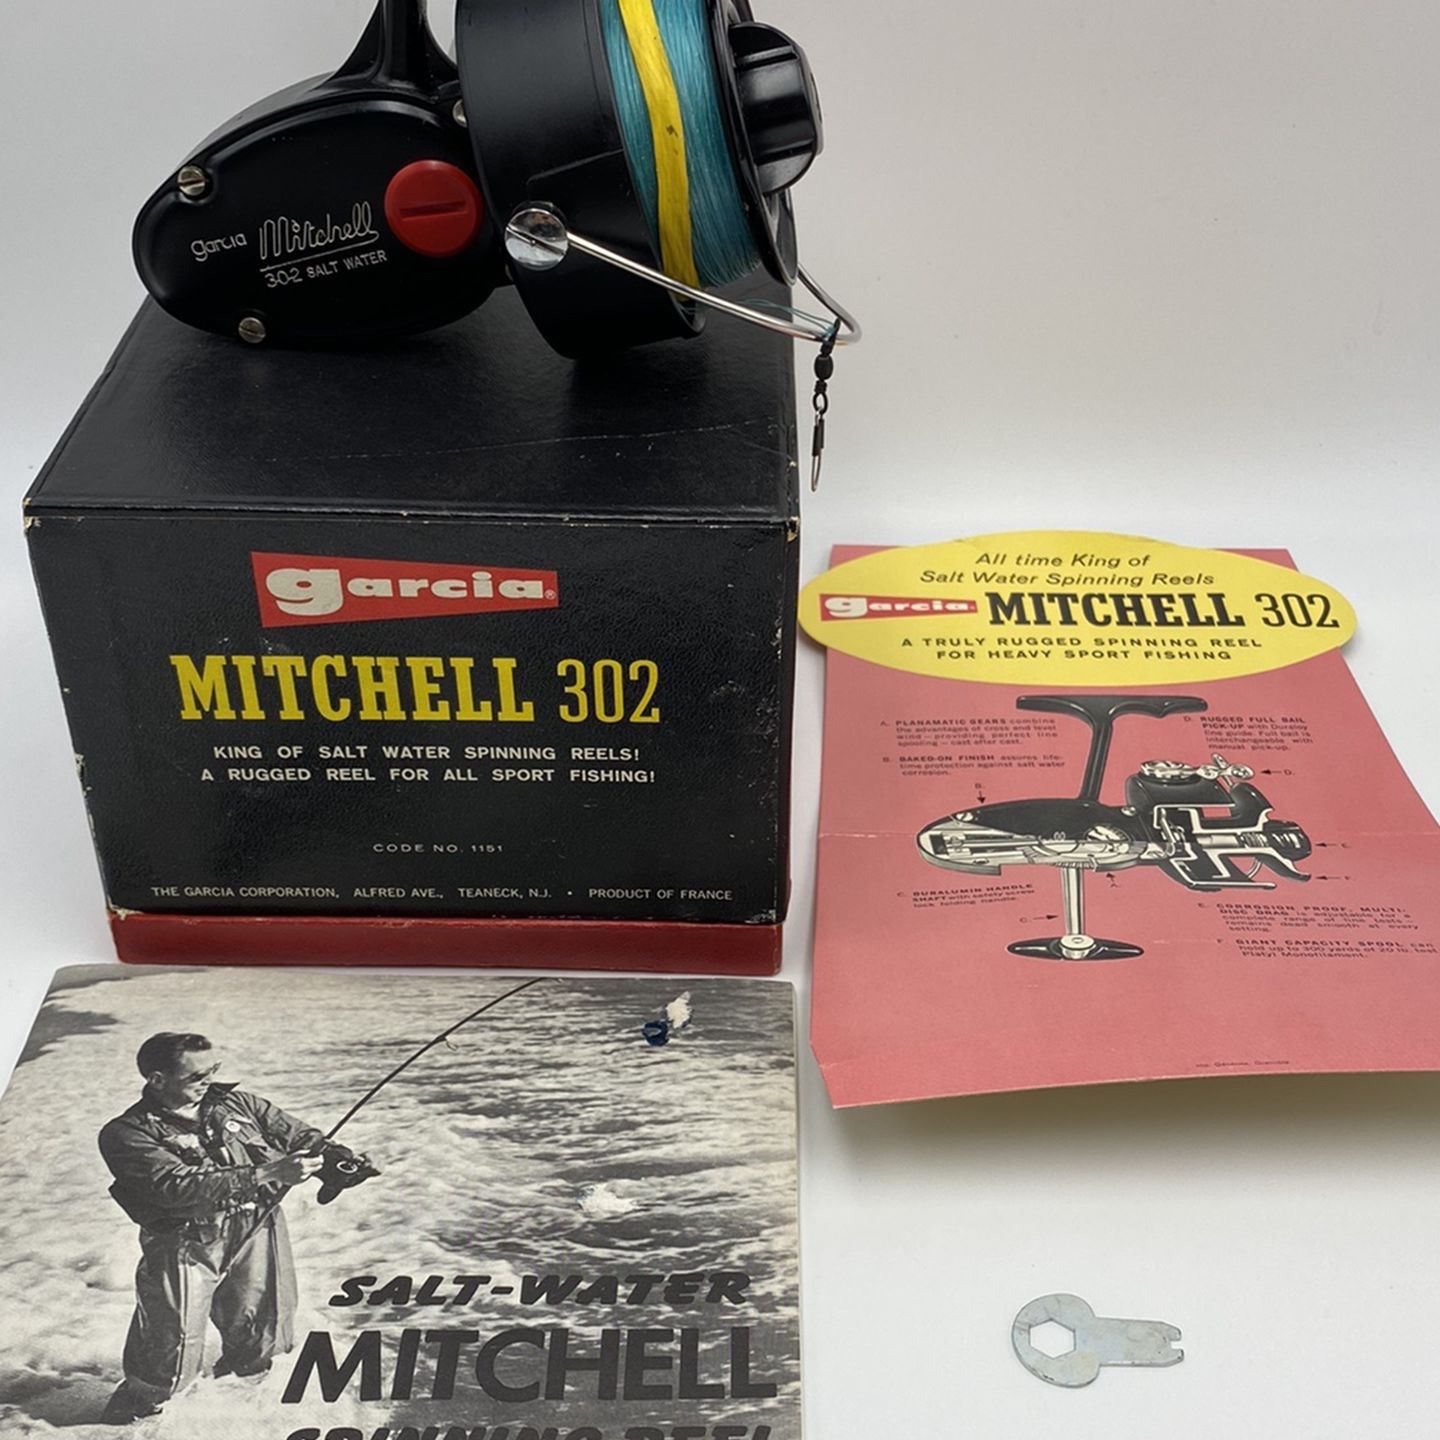 Vintage Garcia Mitchell 302 Salt Water Spinning Reel *NOS* with Literature